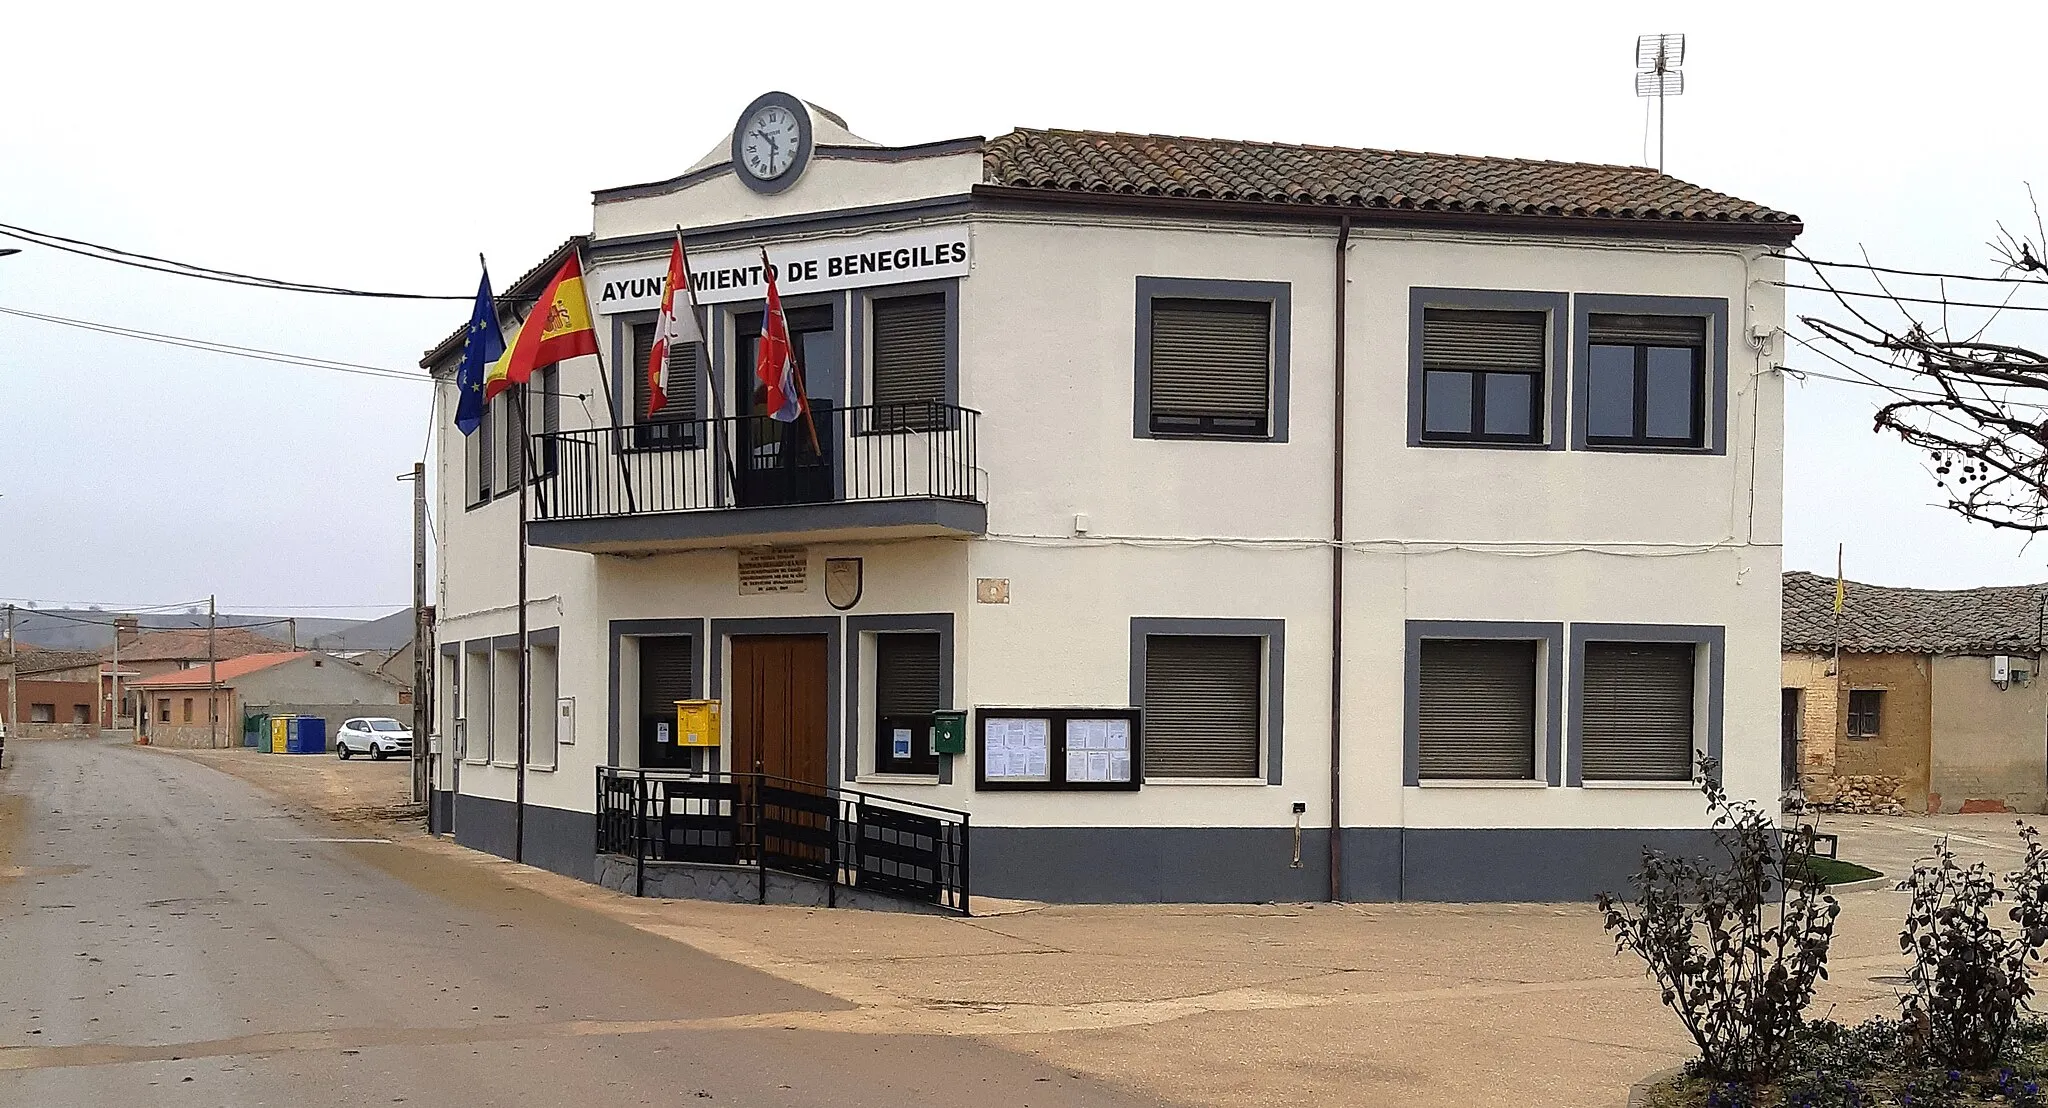 Photo showing: Ayuntamiento de Benegiles (2019)